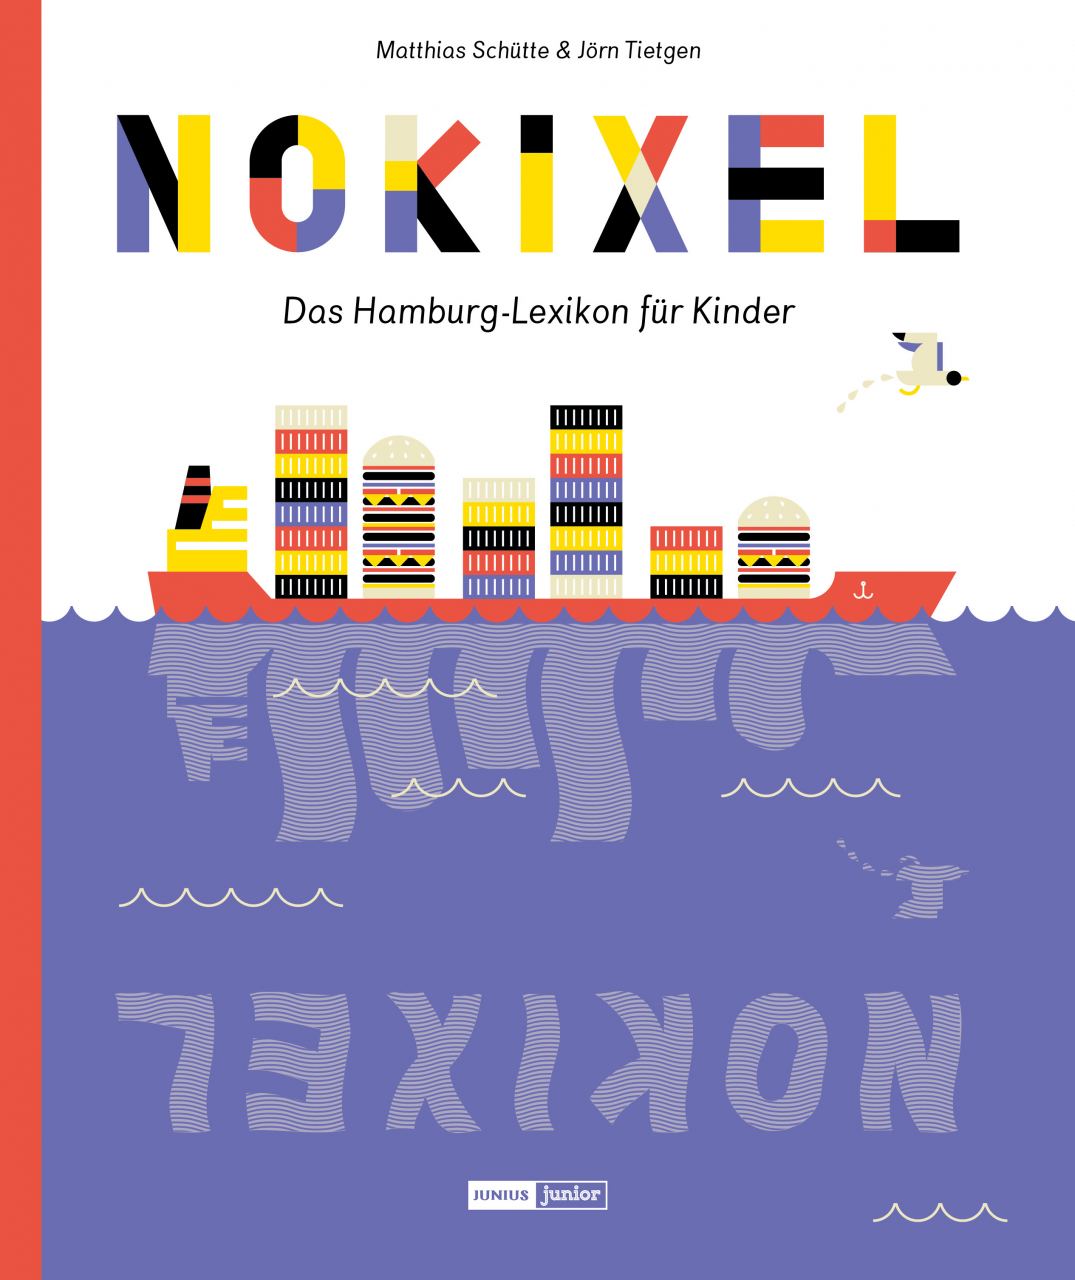 Nokixel - Das Hamburg-Lexikon für Kinder